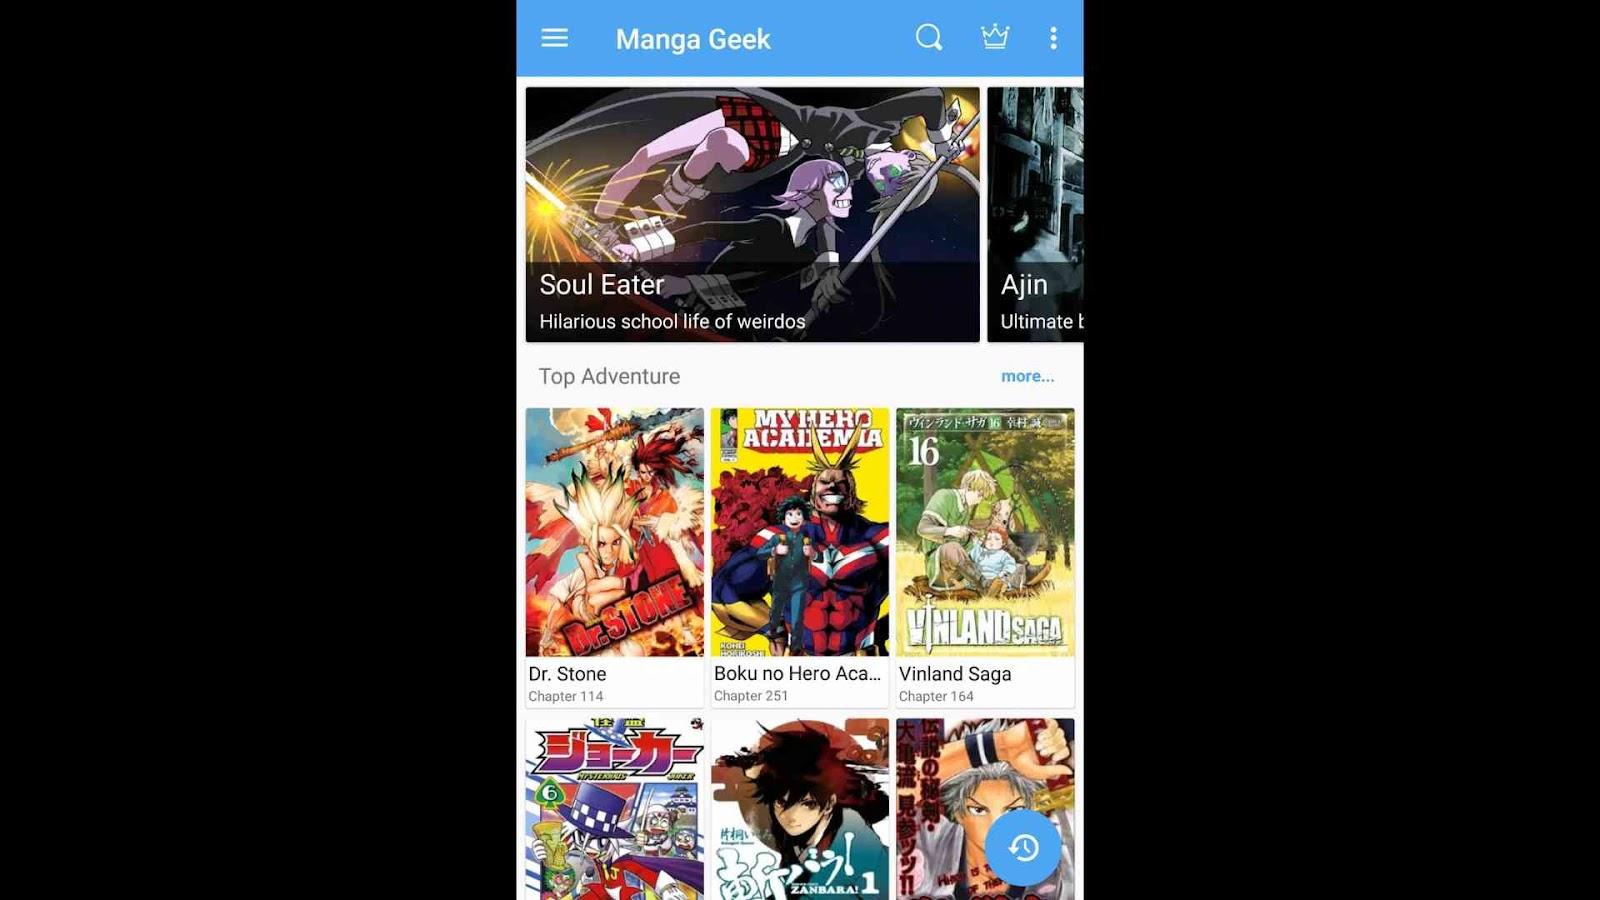 MangaReader - Latest Updated Manga List